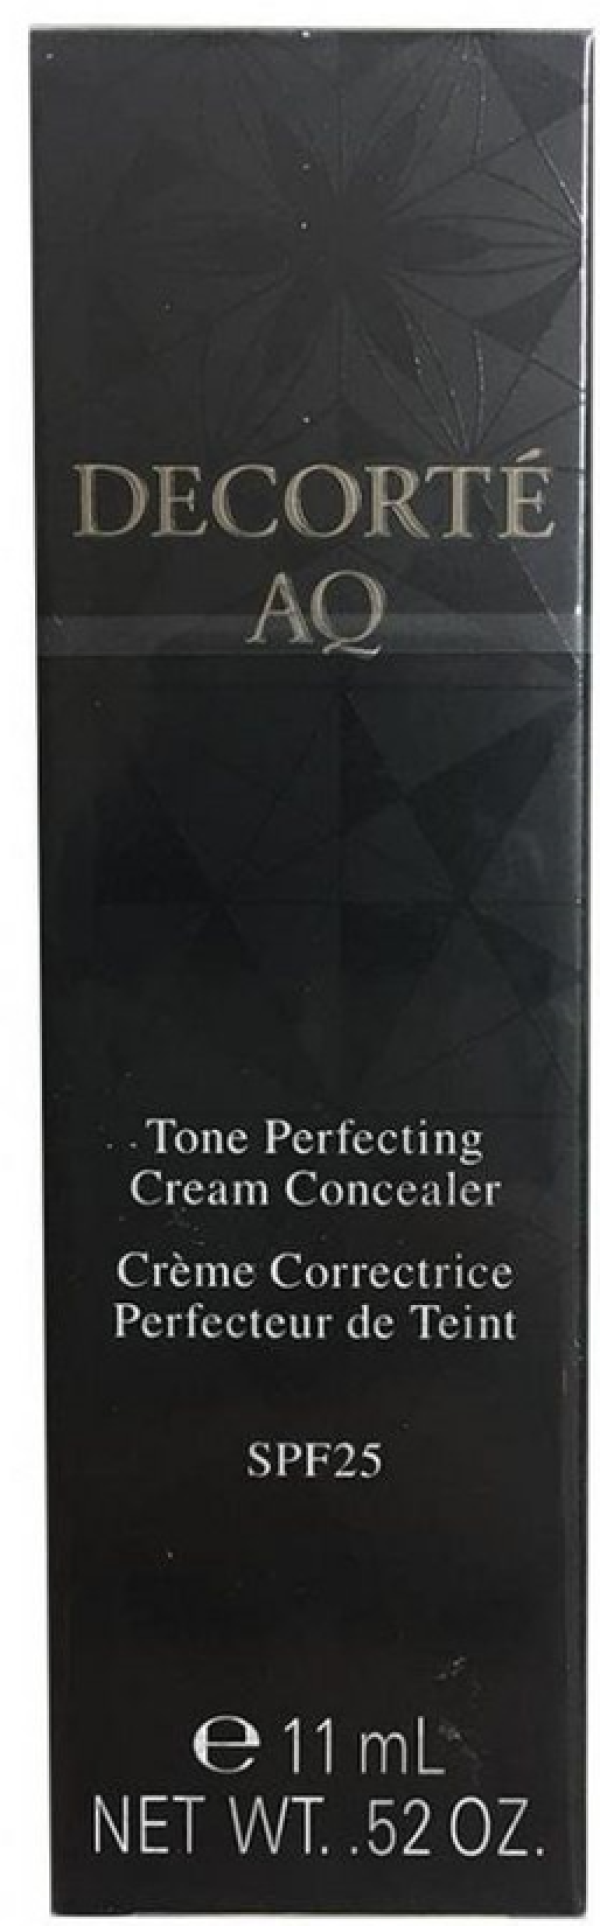 Увлажняющий кремовый консиллер COSME DECORTE AQ TONE PERFECTING CREAM CONCEALER